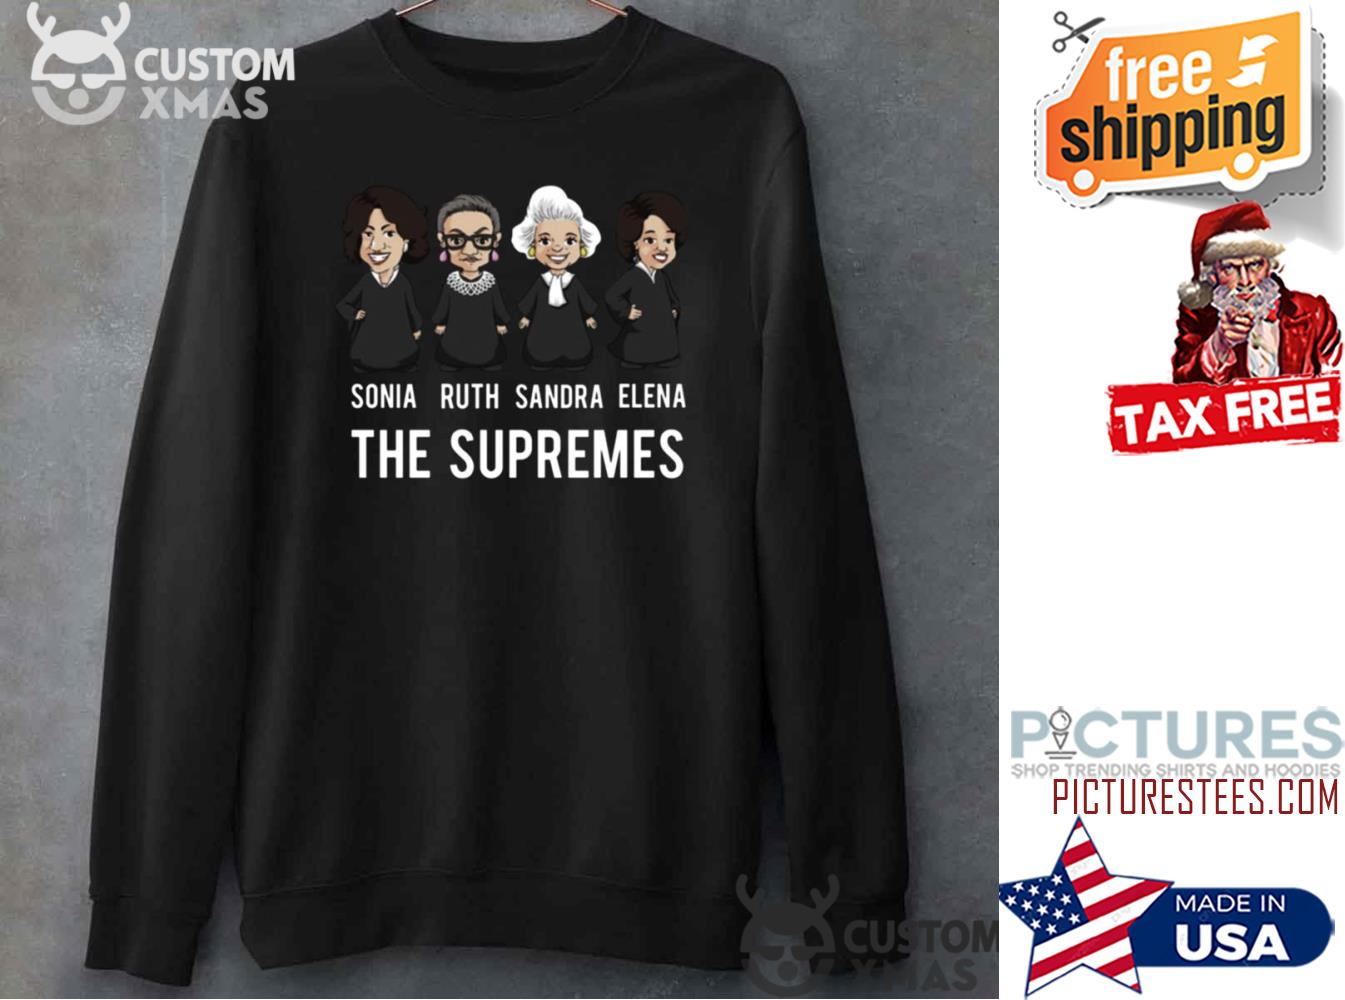 Supreme Hoodies, Sweatshirts & Sweaters